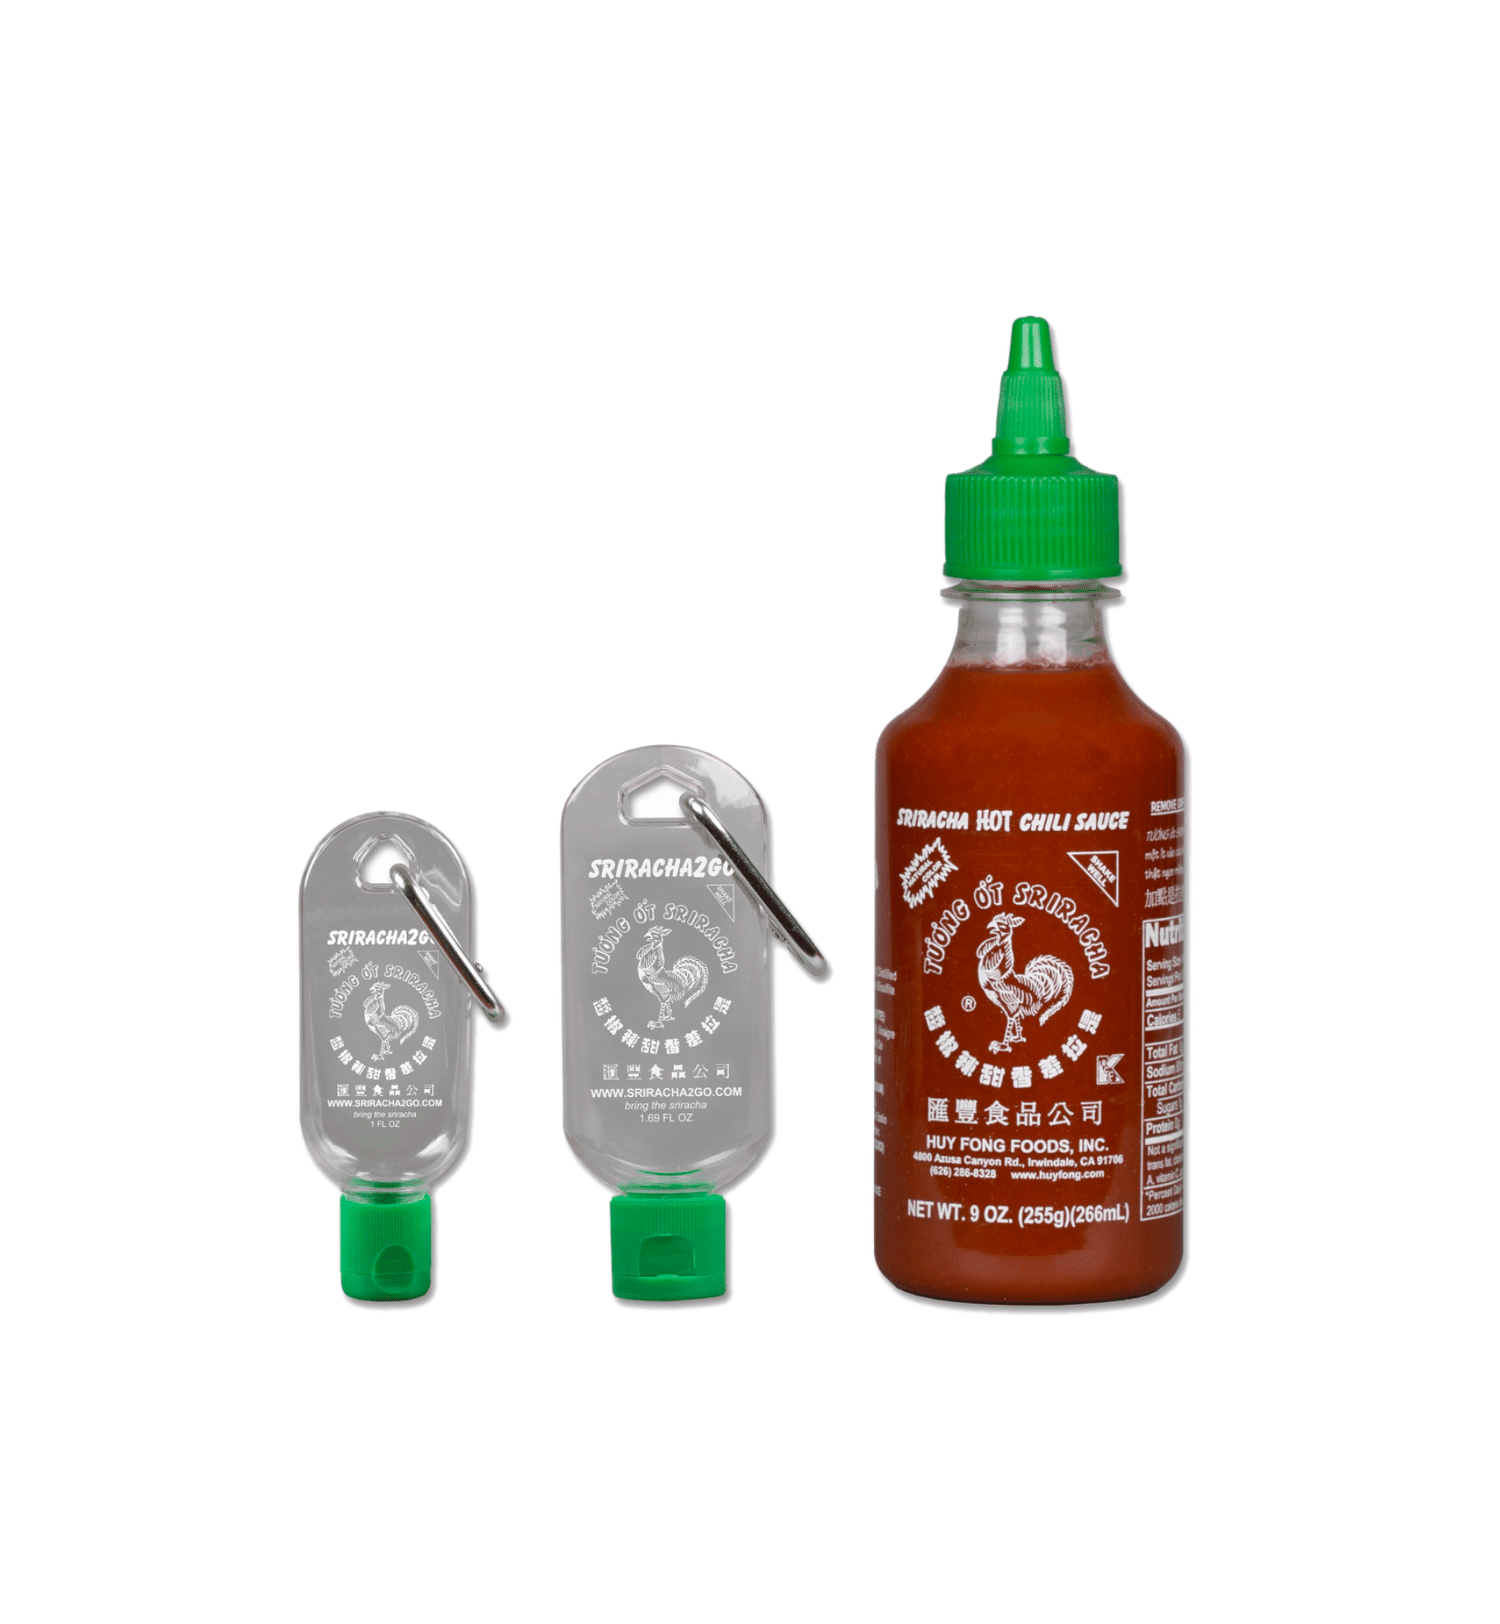 Sriracha For You